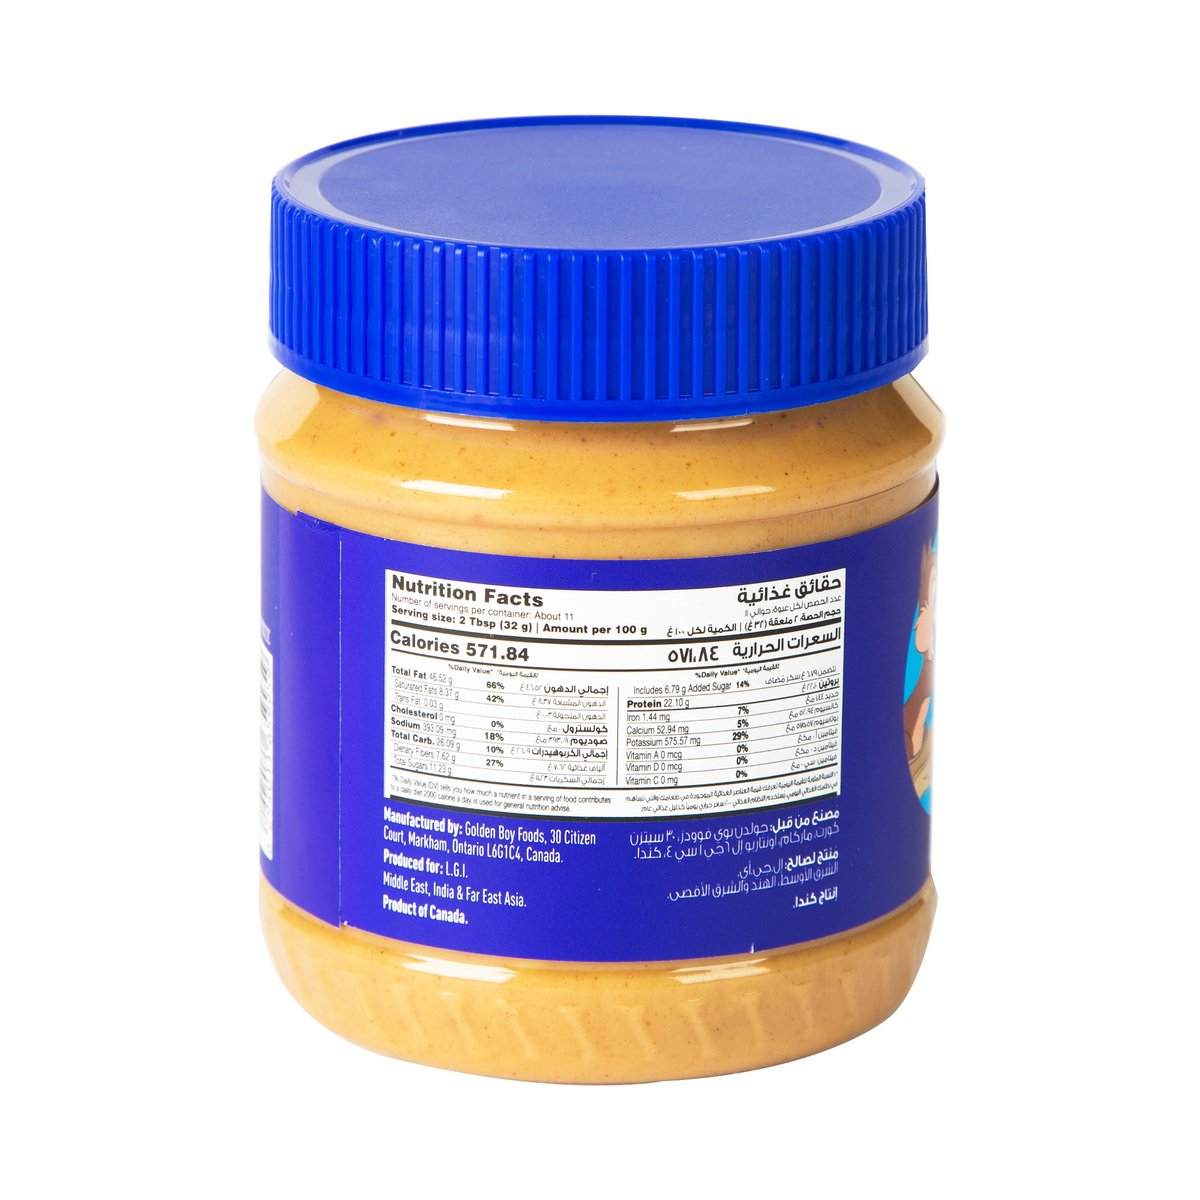 Disney Crunchy Peanut Butter 340 g